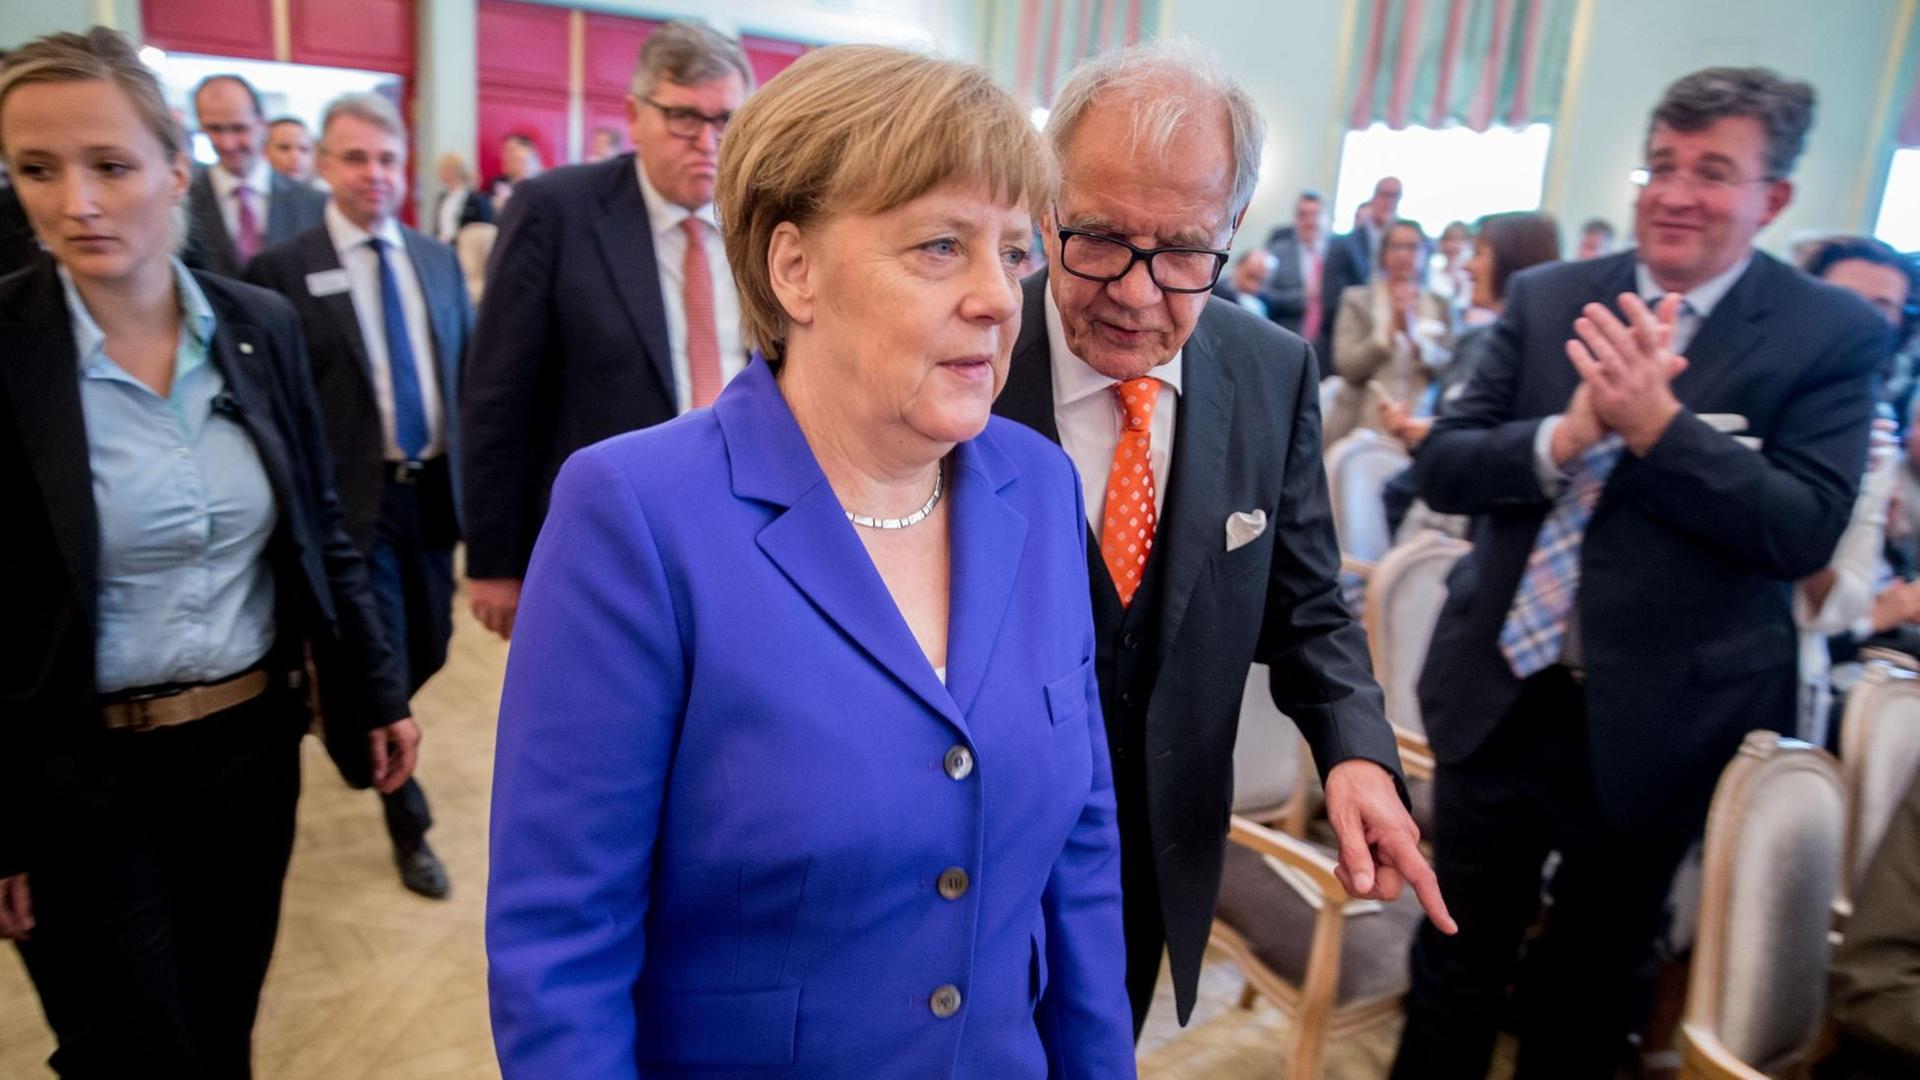 Brun-Hagen Hennerkes, Vorsitzender des Vorstands der Stiftung Familienunternehmen, begrüßt am 10.06.2016 in Berlin Bundeskanzlerin Angela Merkel (CDU) beim Tag des deutschen Familienunternehmens.